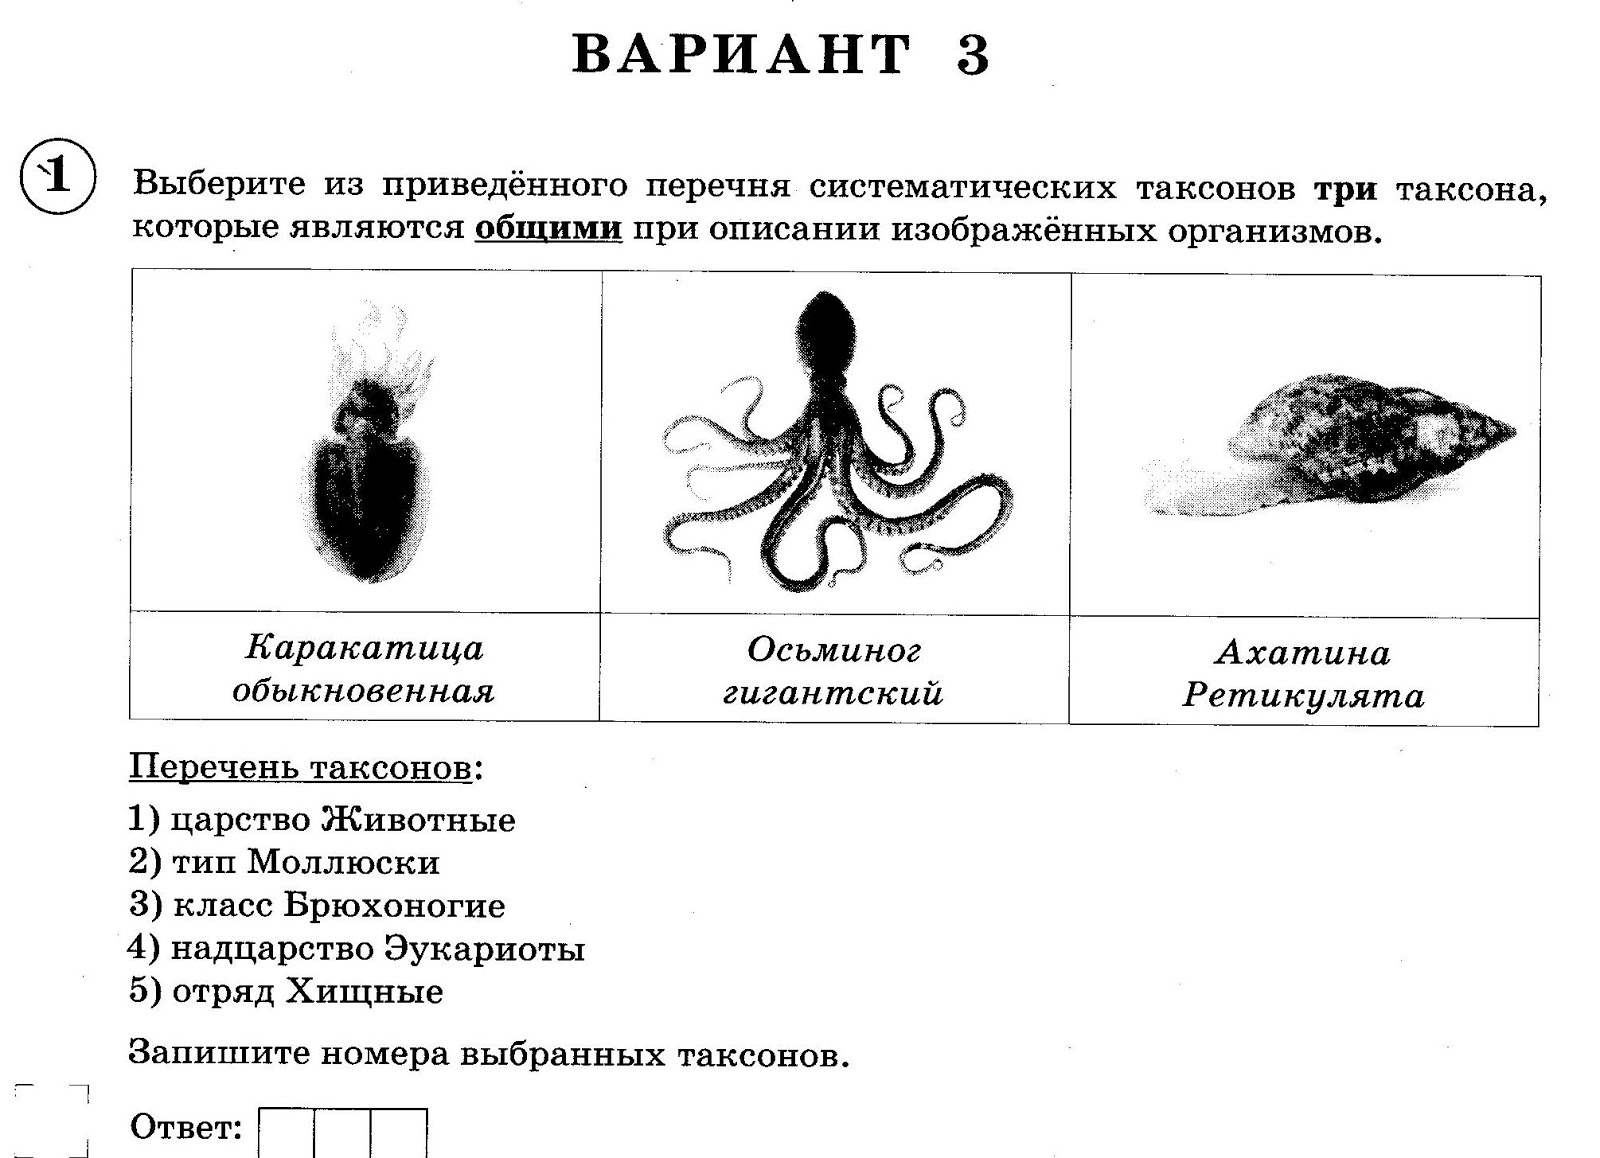 Консументы животных. Признаки таксонов человека ВПР 8 класс. Впр биология 11 класс оценки